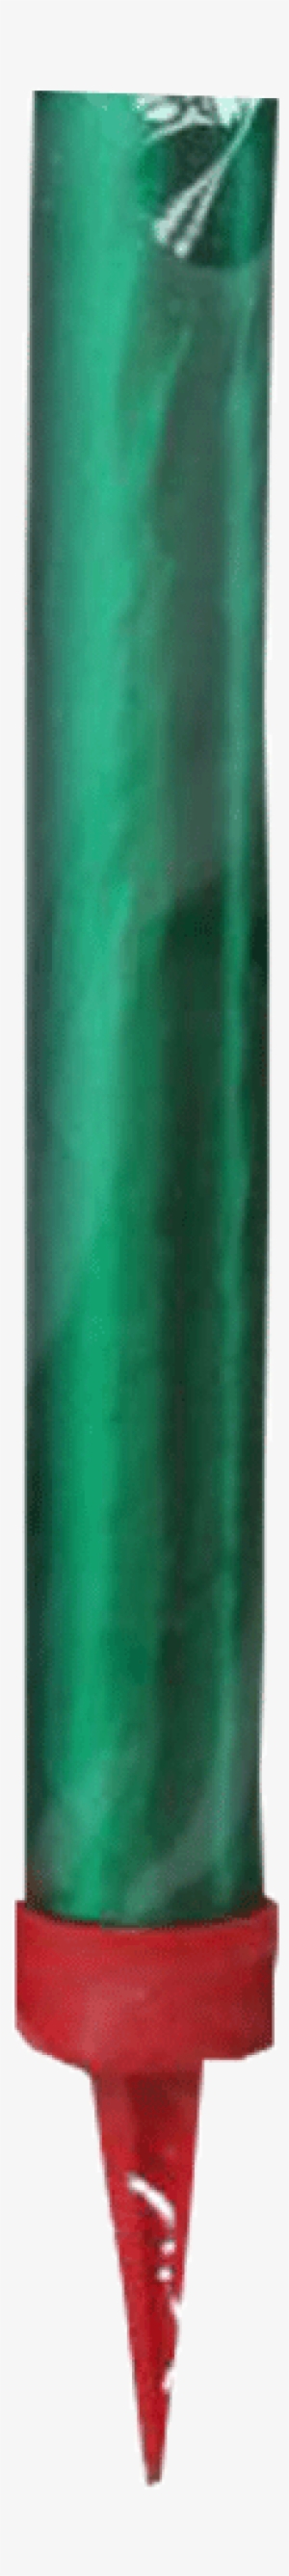 Green Bottle Sparklers - Marking Tools